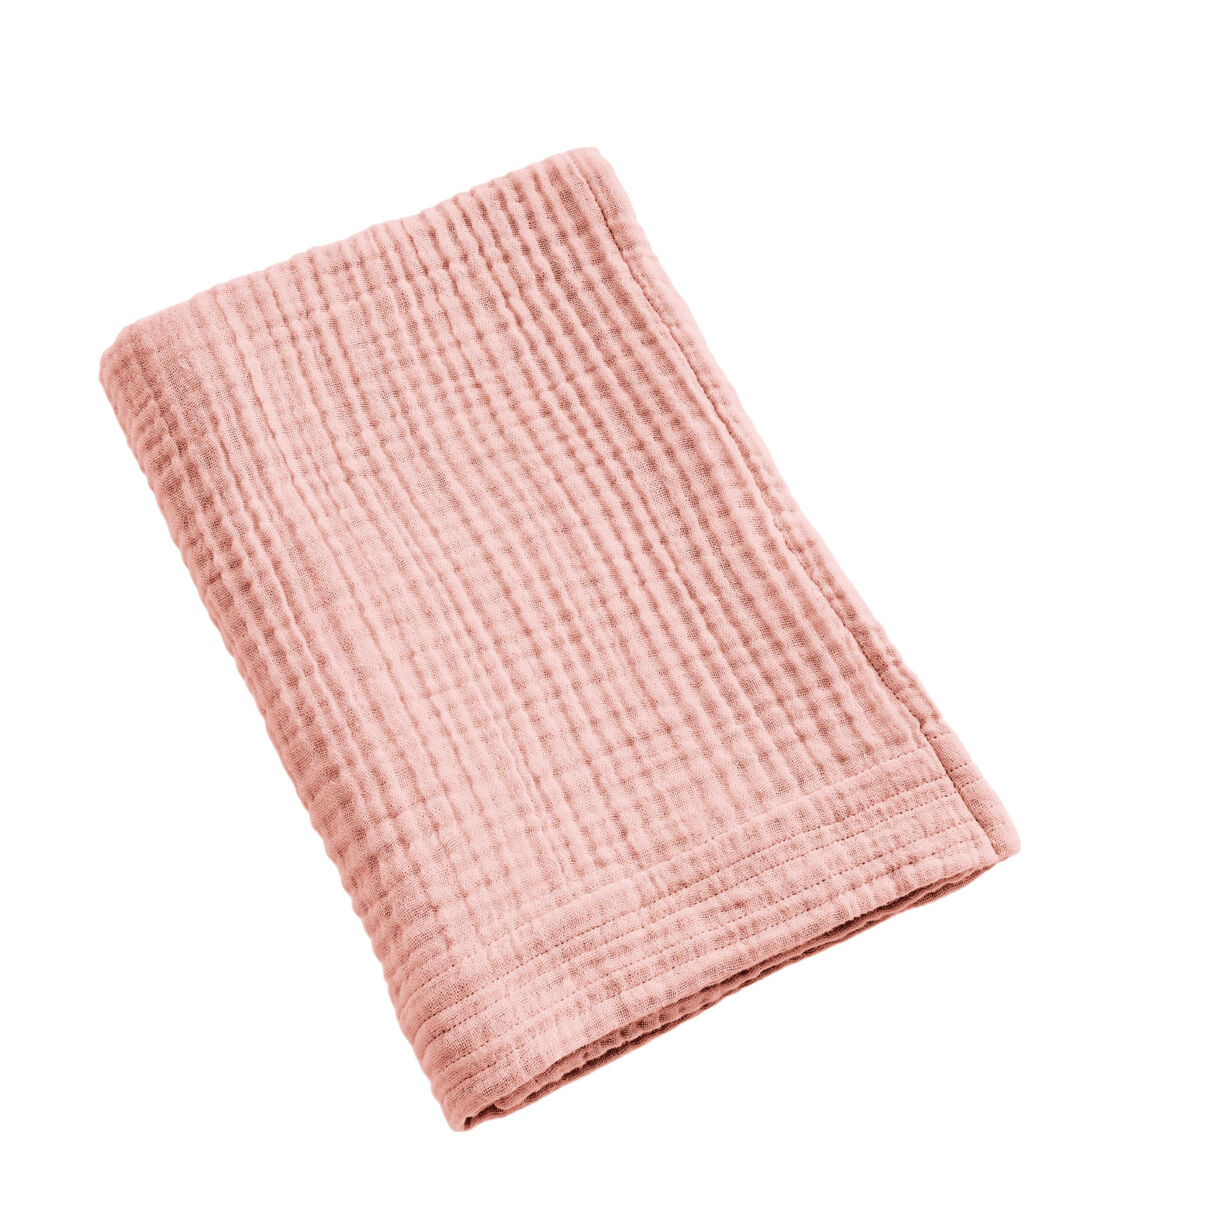 Toalla de baño en gasa de algodón (50 x 90 cm) Gaïa Rosa durazno